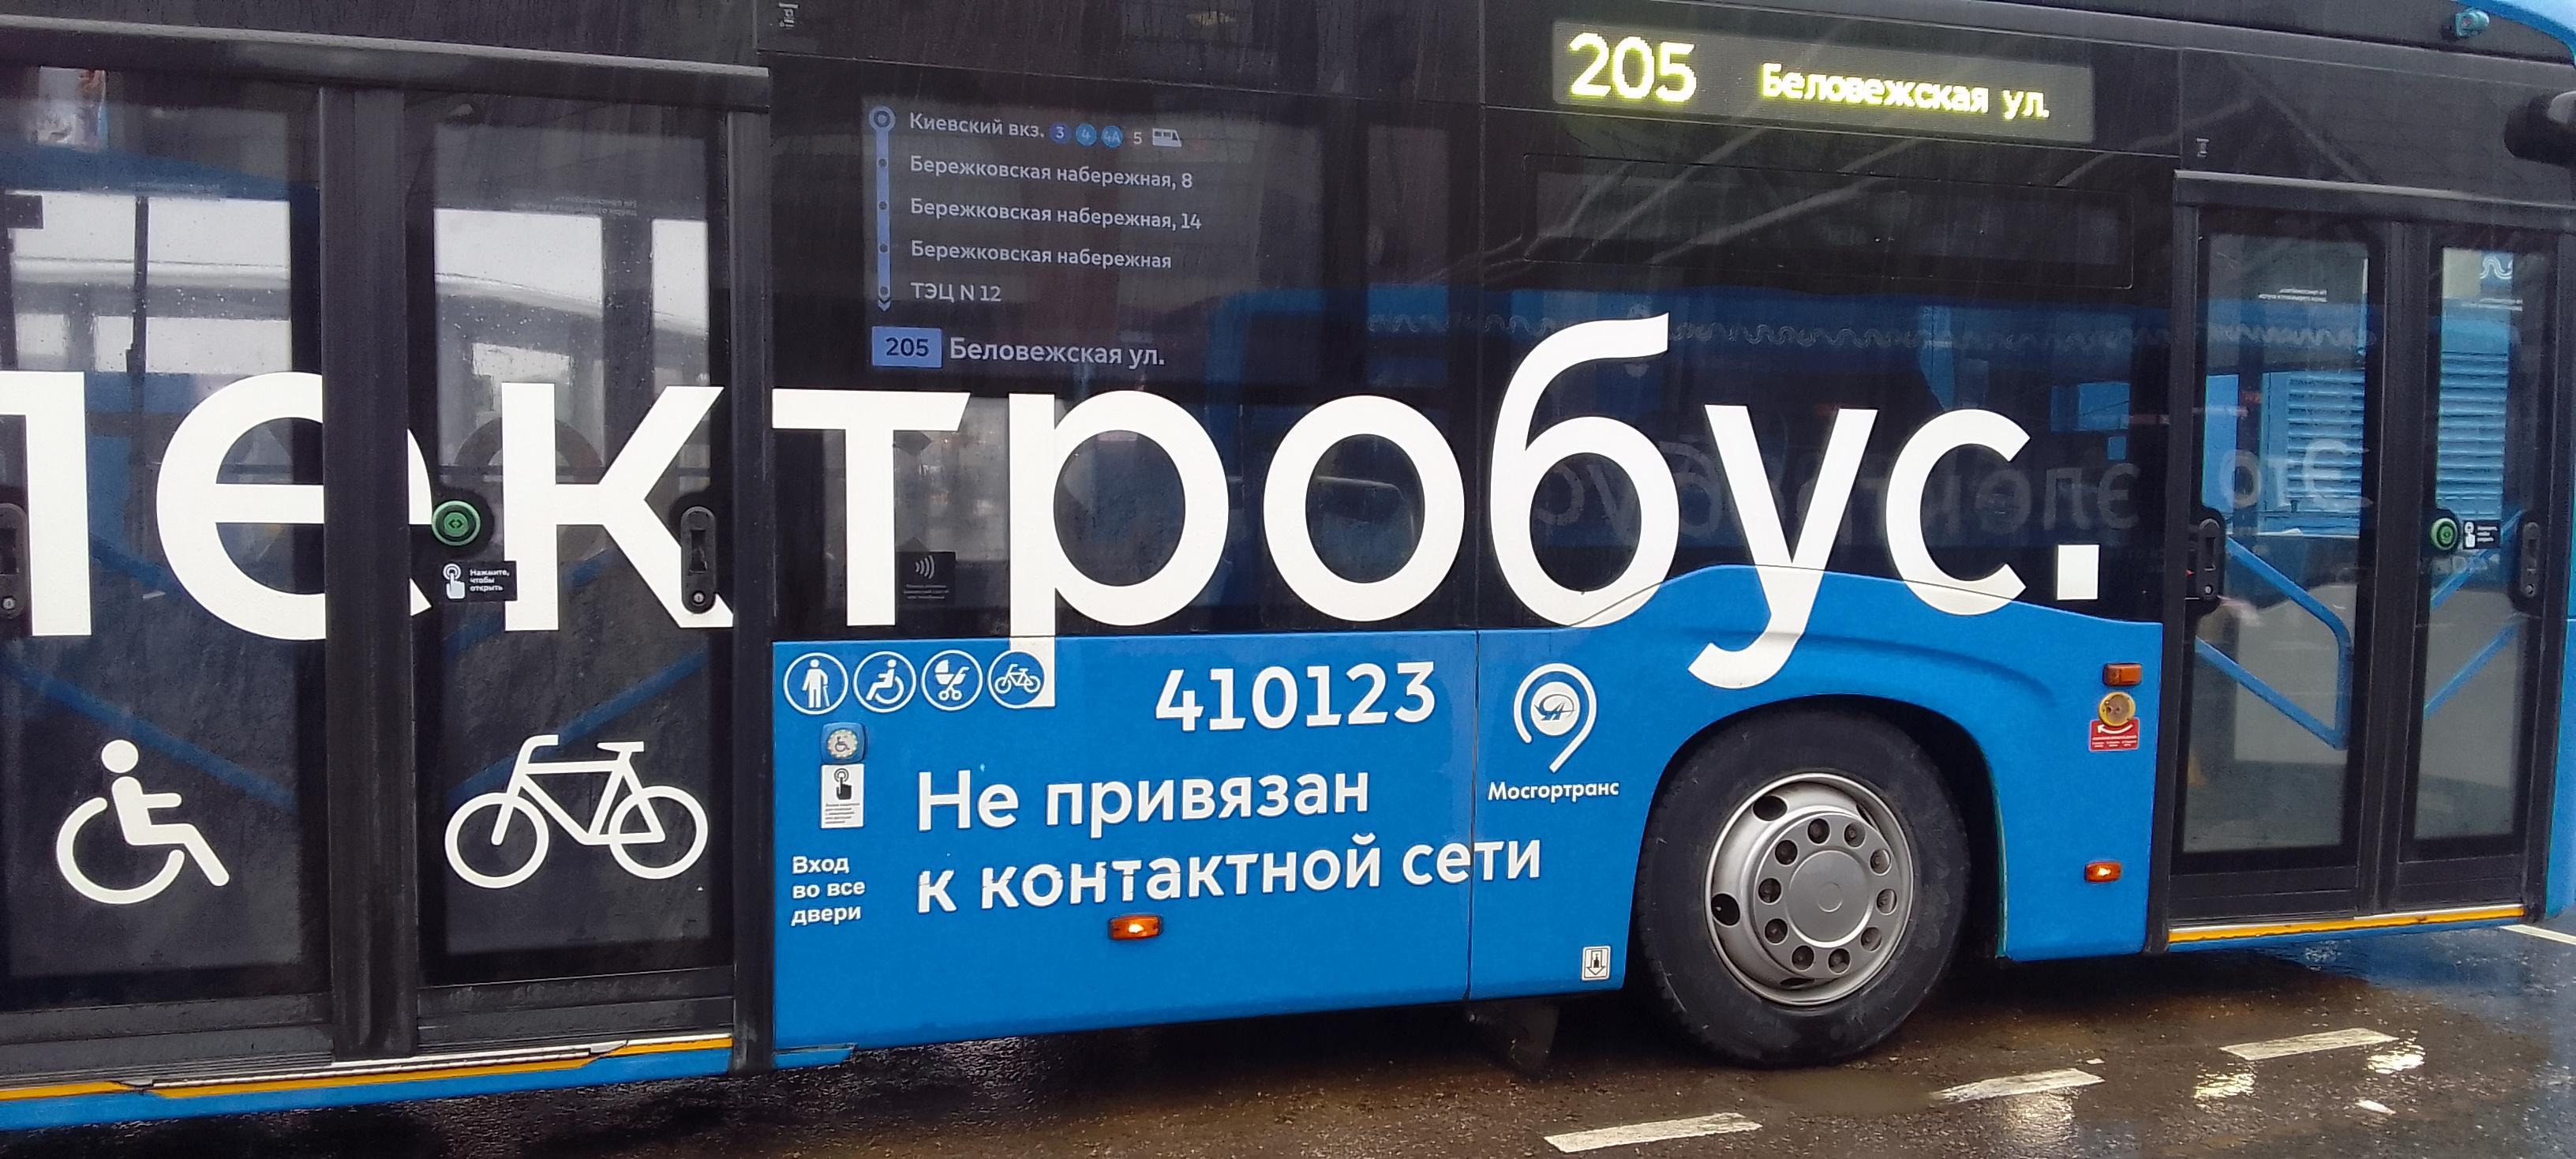 Автобус 205 маршрут на карте. Маршрут 205 автобуса Москва.